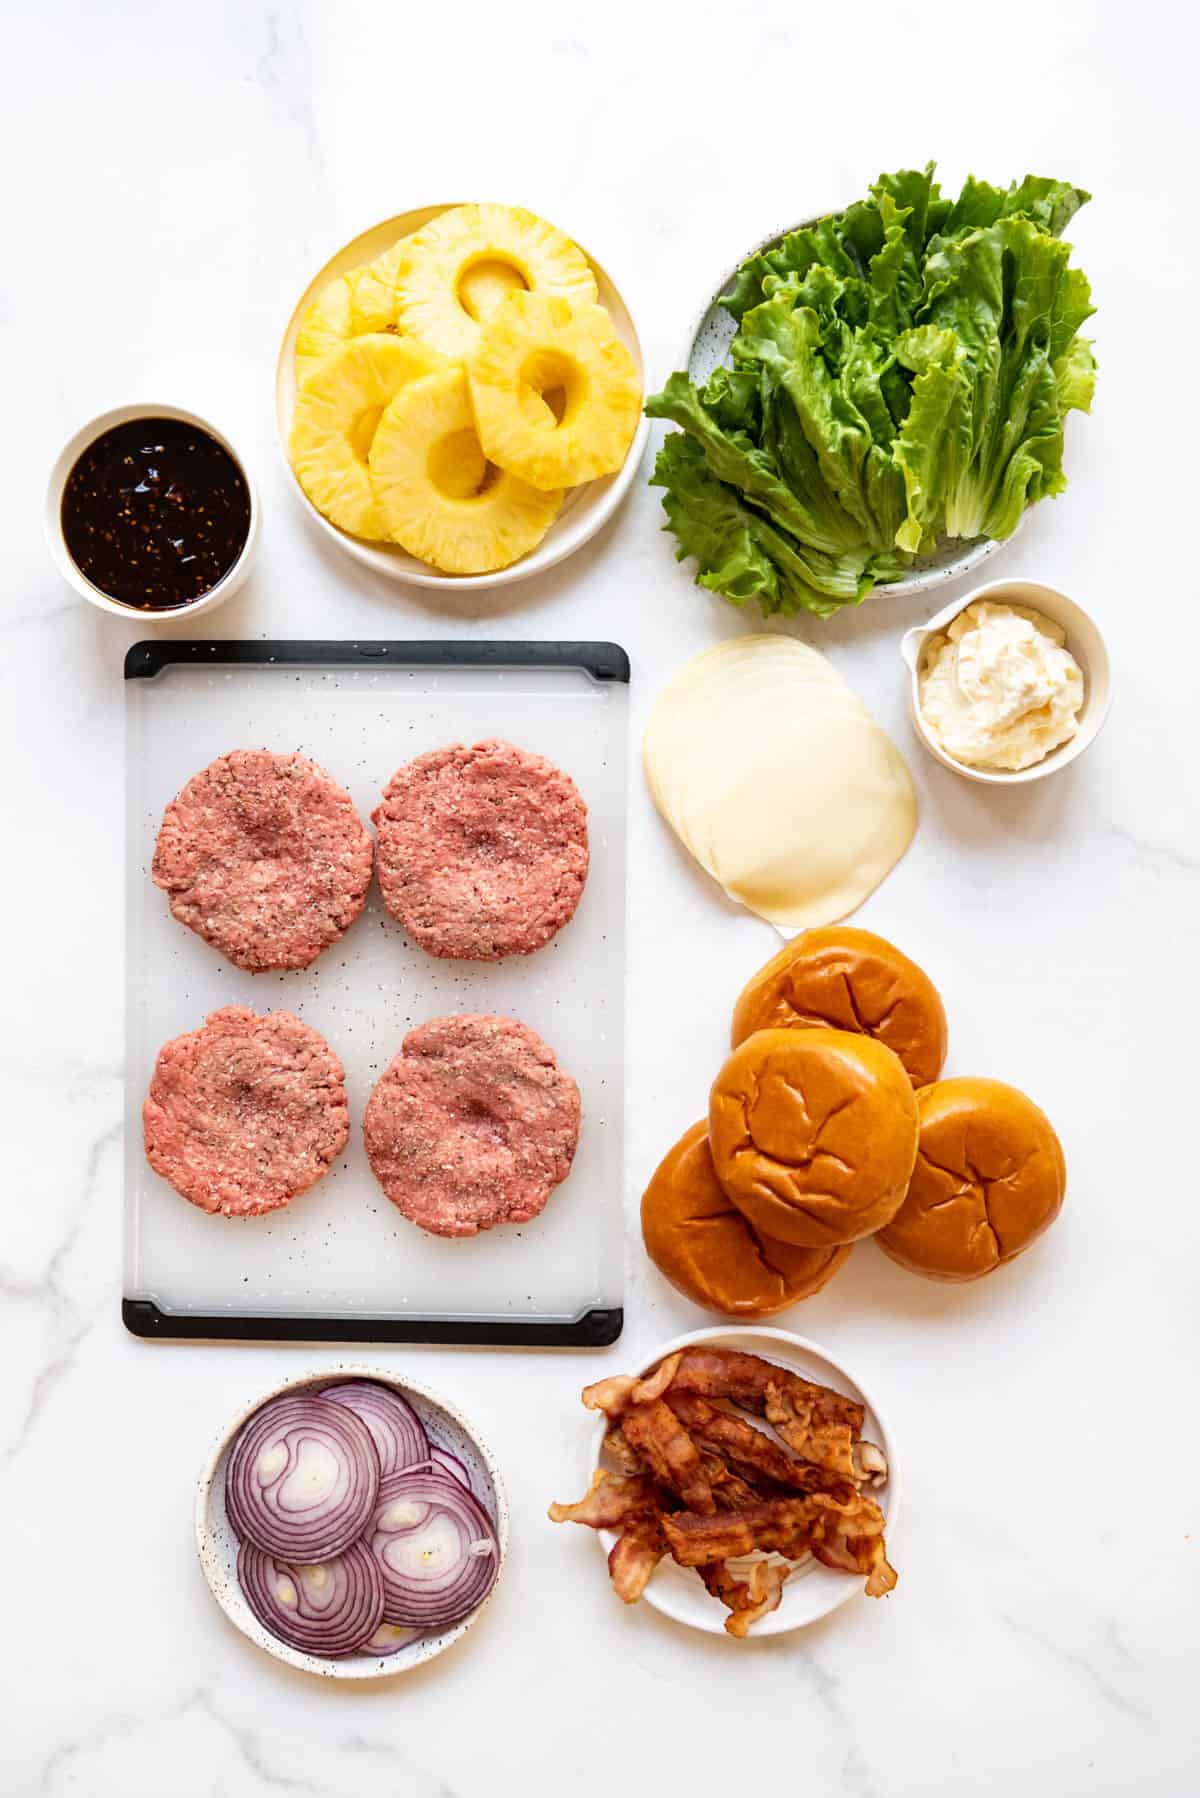 Ingredients for making Hawaiian burgers.